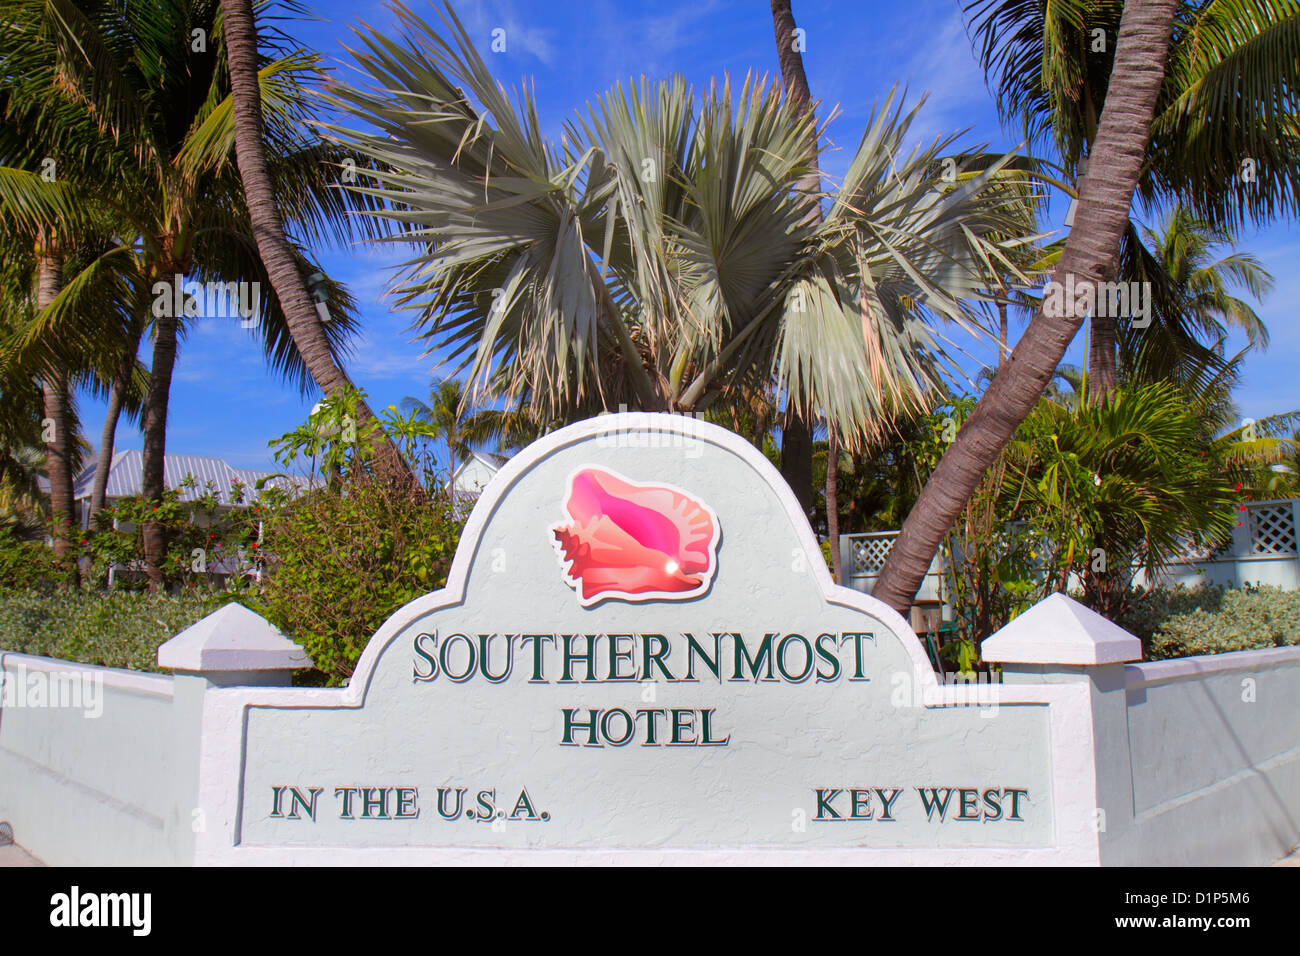 Florida Key West Florida, Keys Duval Street, Southernmost Hotel in den USA, Schild, Logo, Besucher reisen Reise touristischer Tourismus Wahrzeichen c Stockfoto